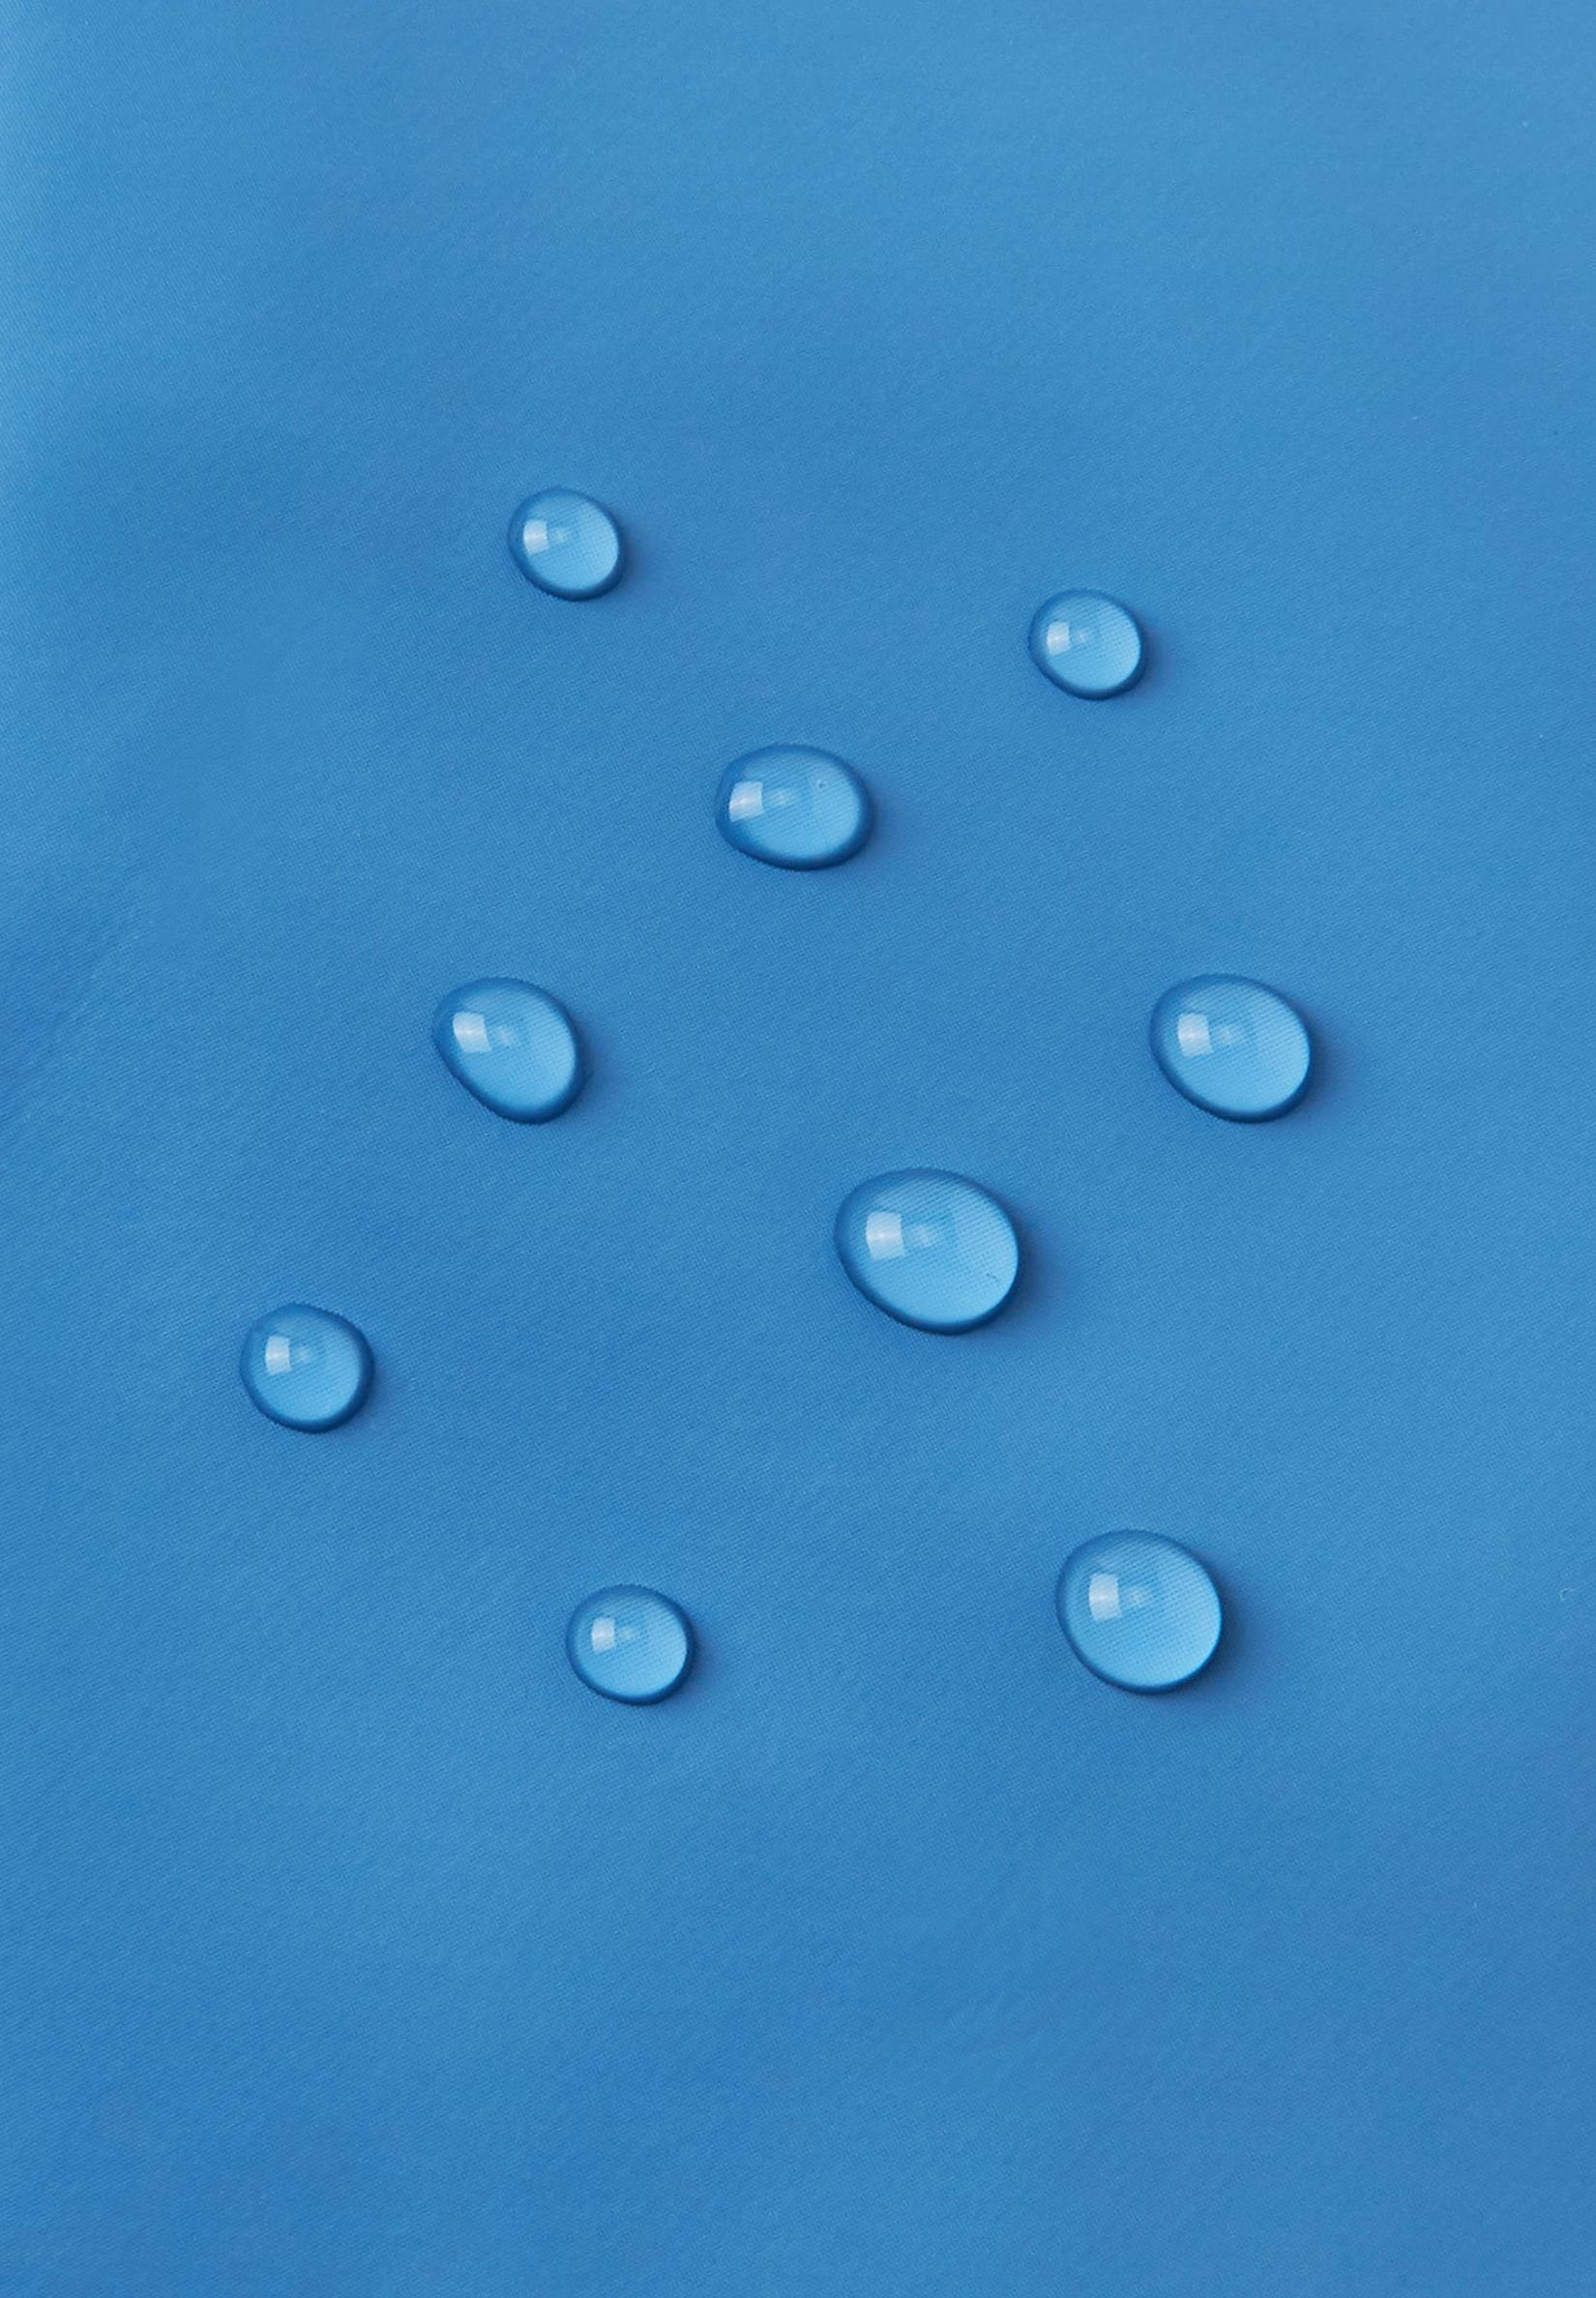 reima Regenhut Denim winddicht frei und blue wasserdicht, PVC von Rainy